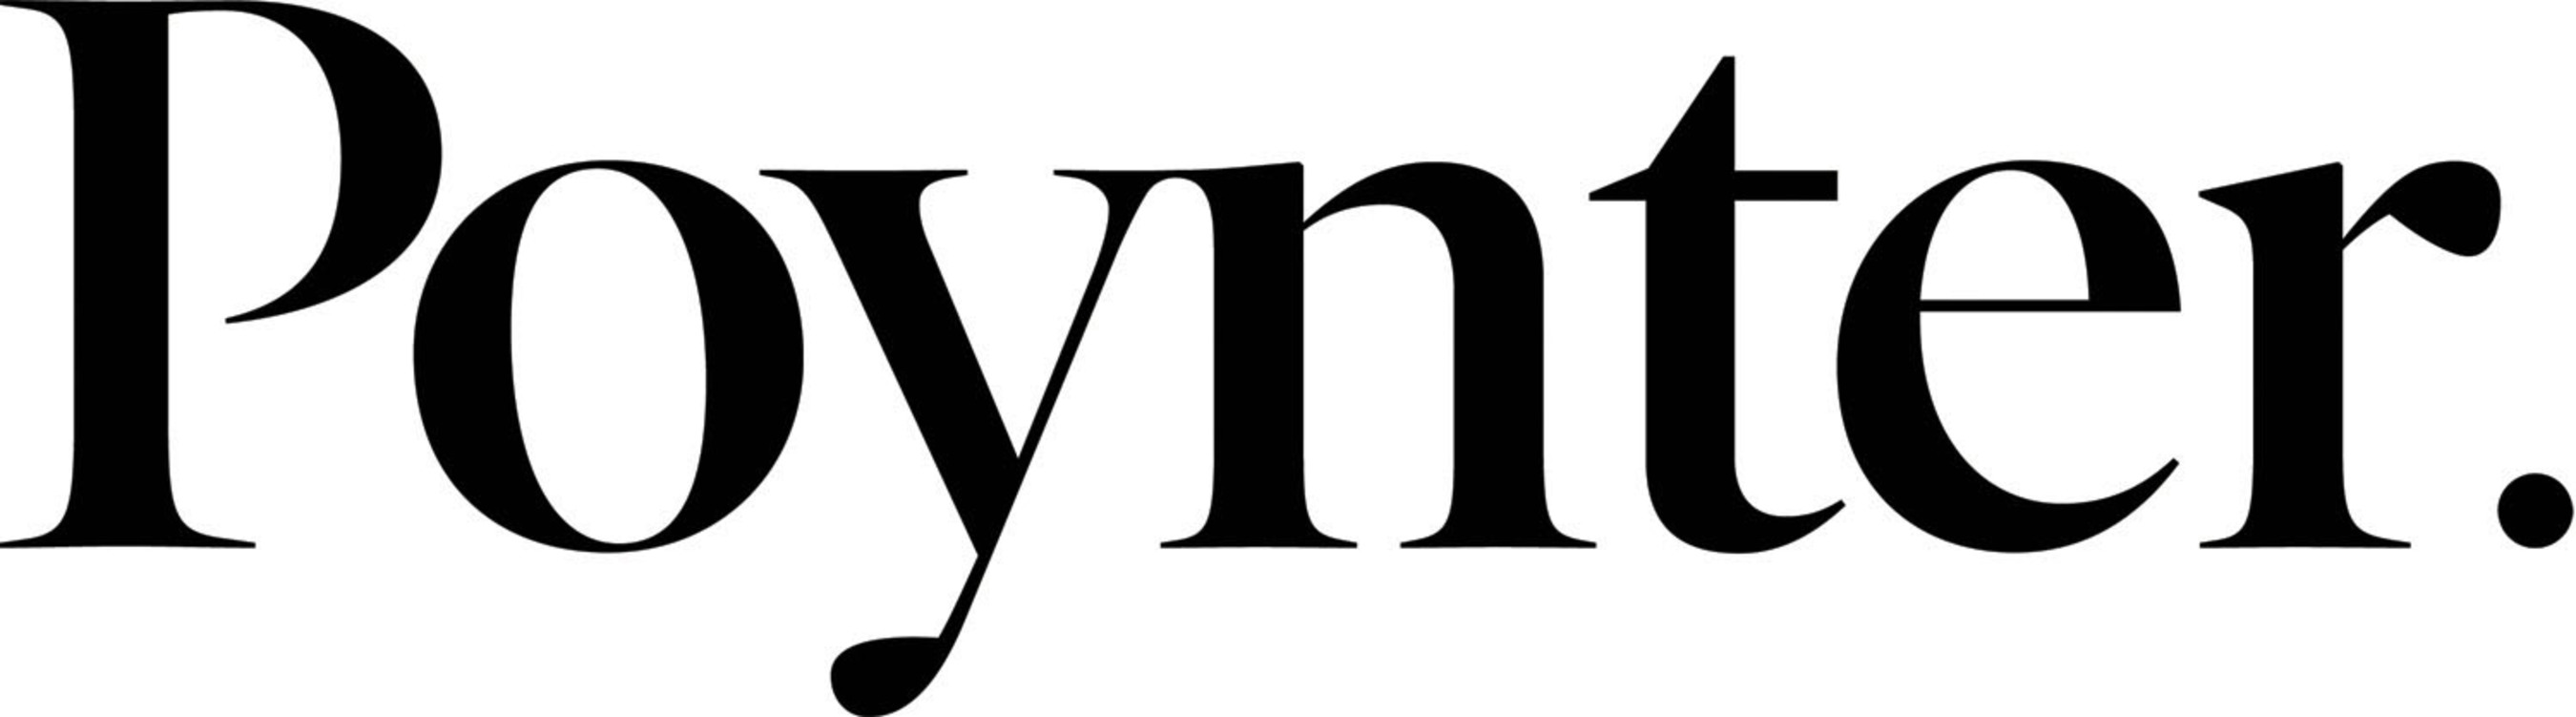 The Poynter Institute Logo